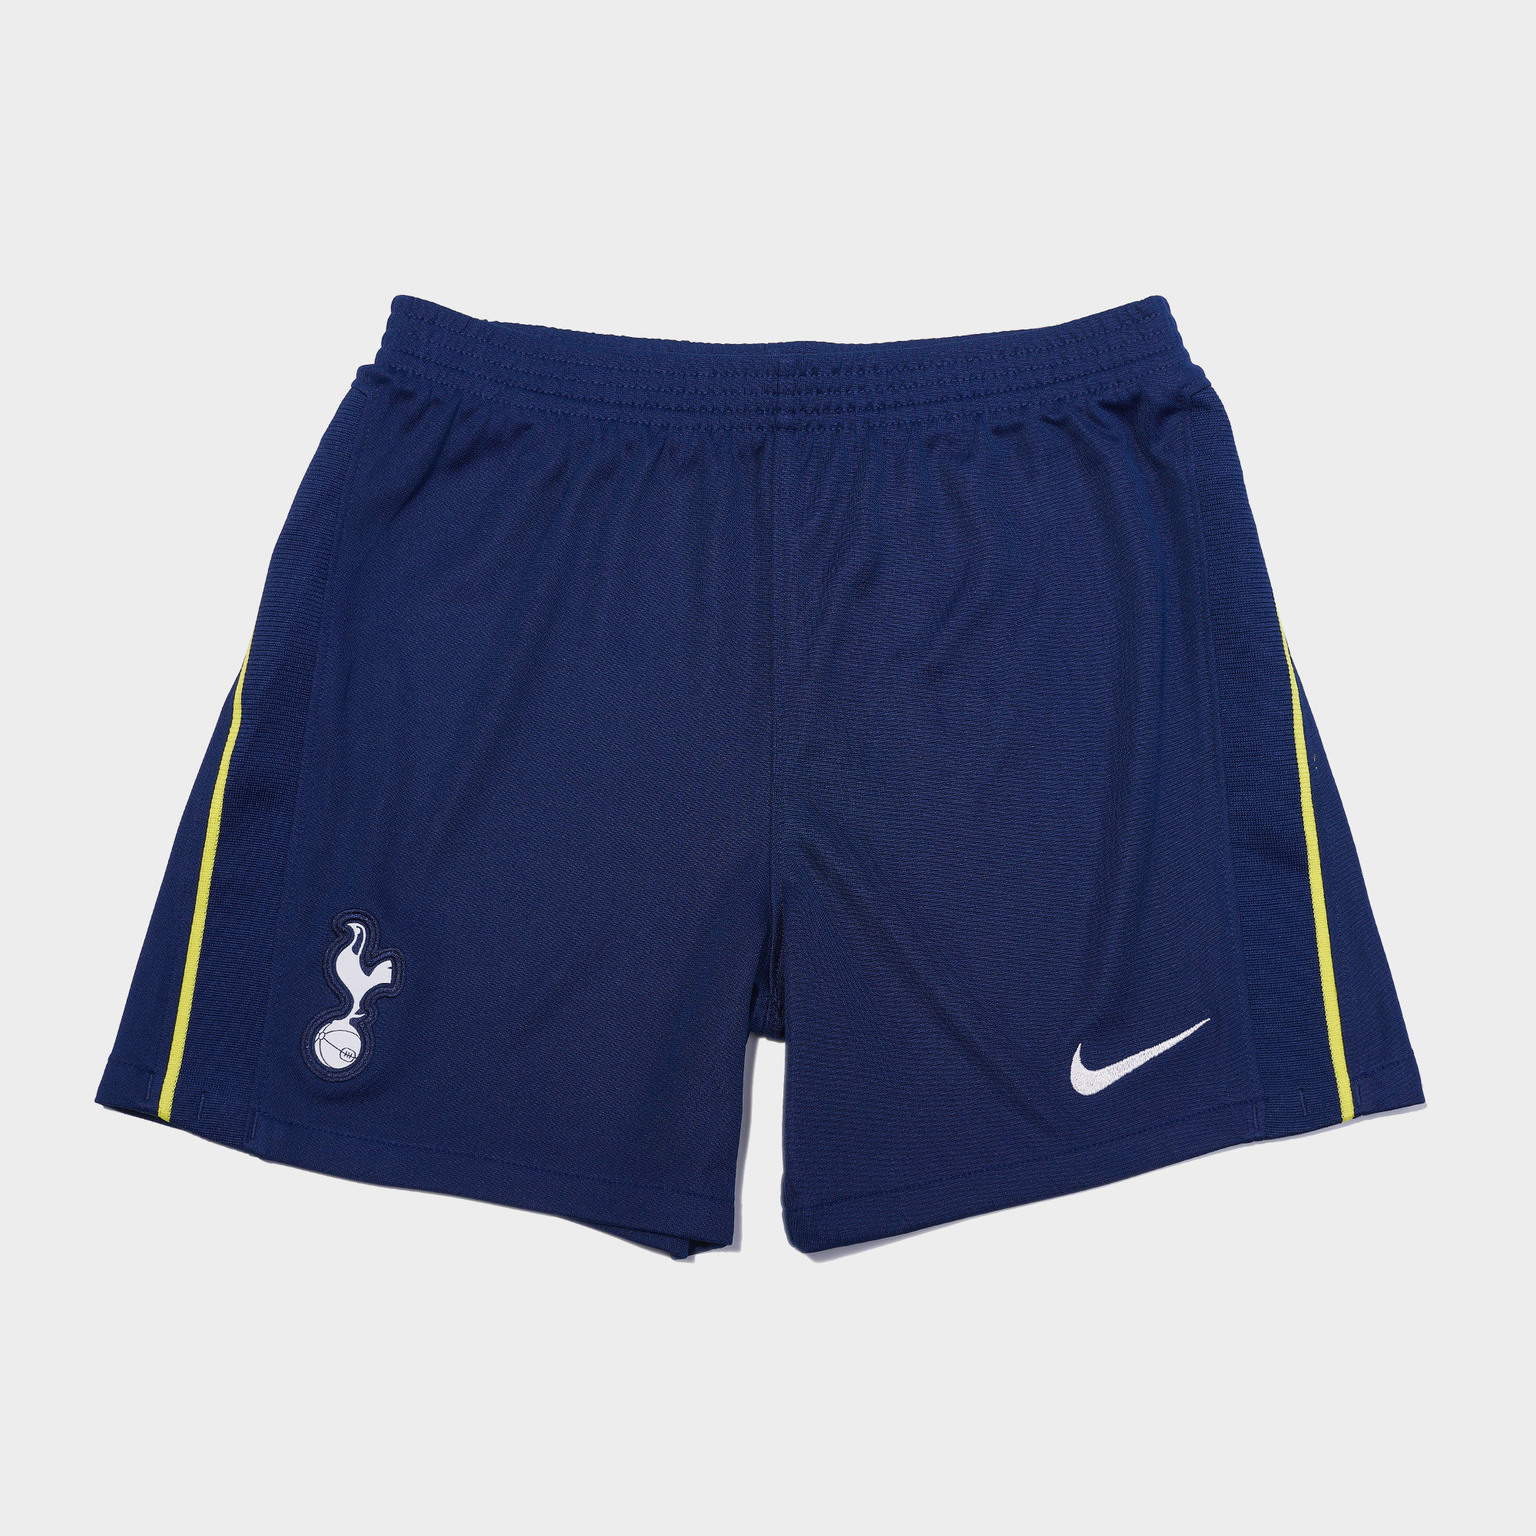 Комплект детской формы Nike Tottenham сезон 2020/21